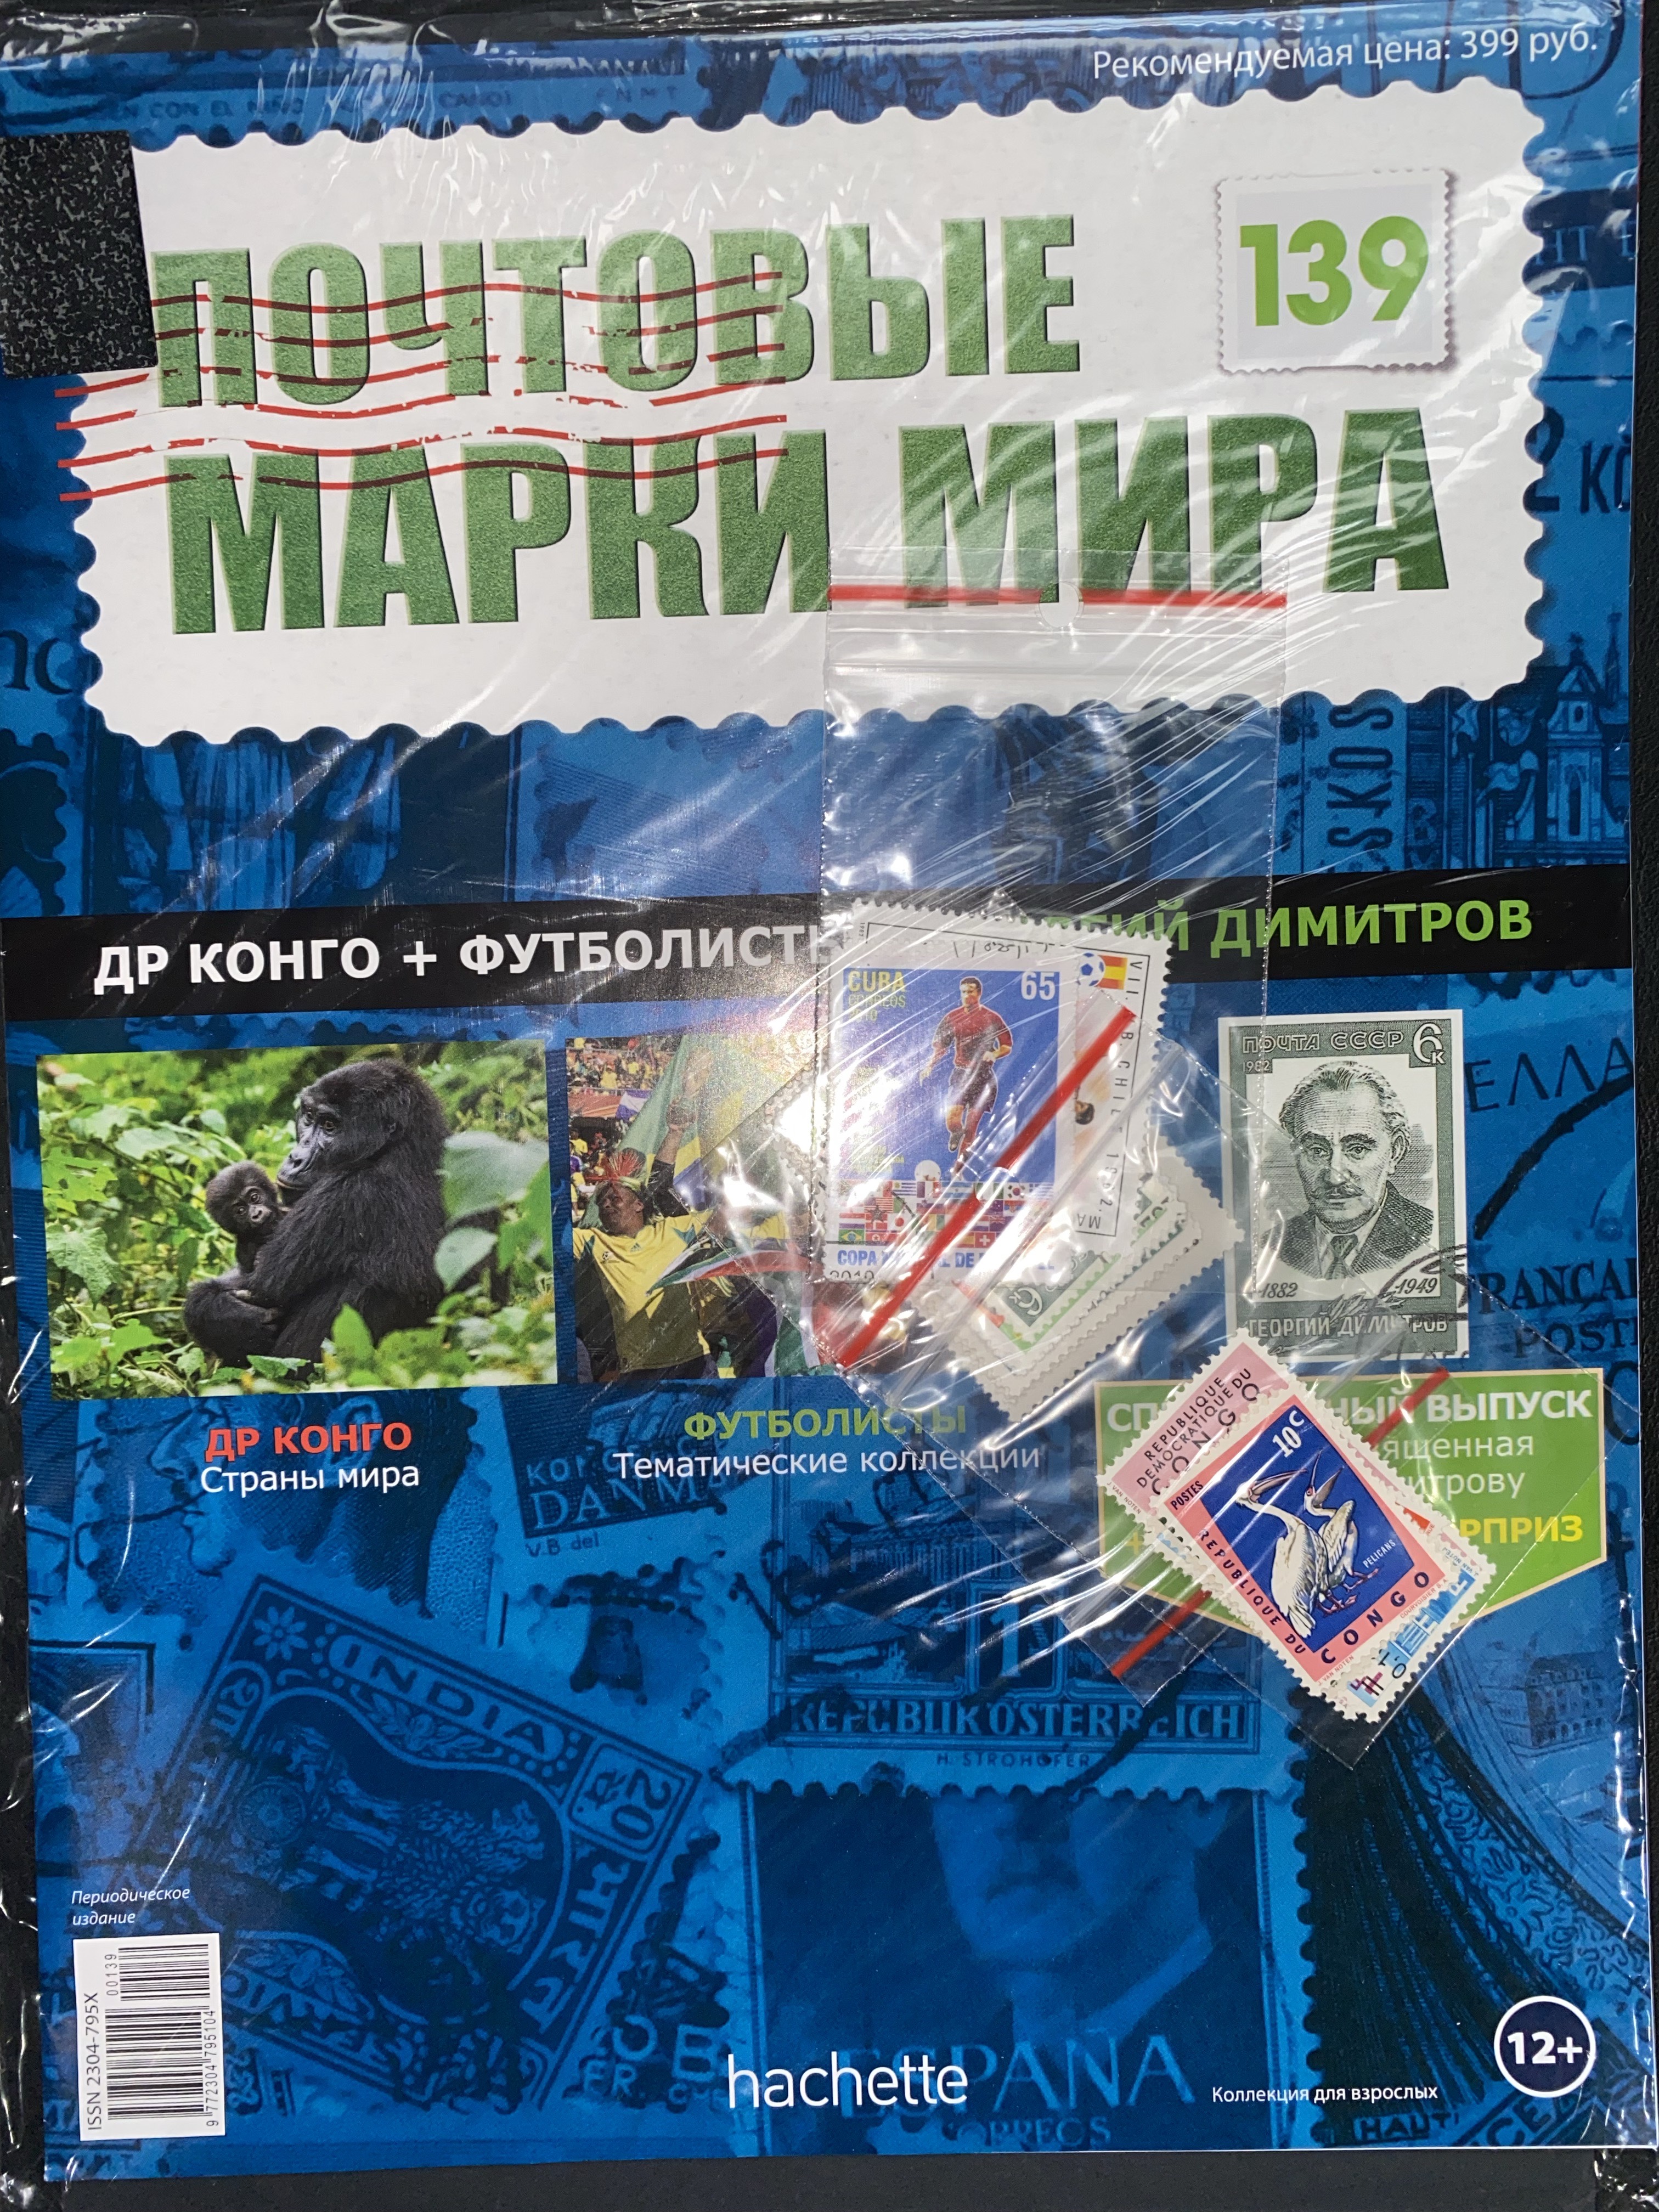 №139 ДР Конго+Футболисты+Георгий Димитров+Лист для хранения марок